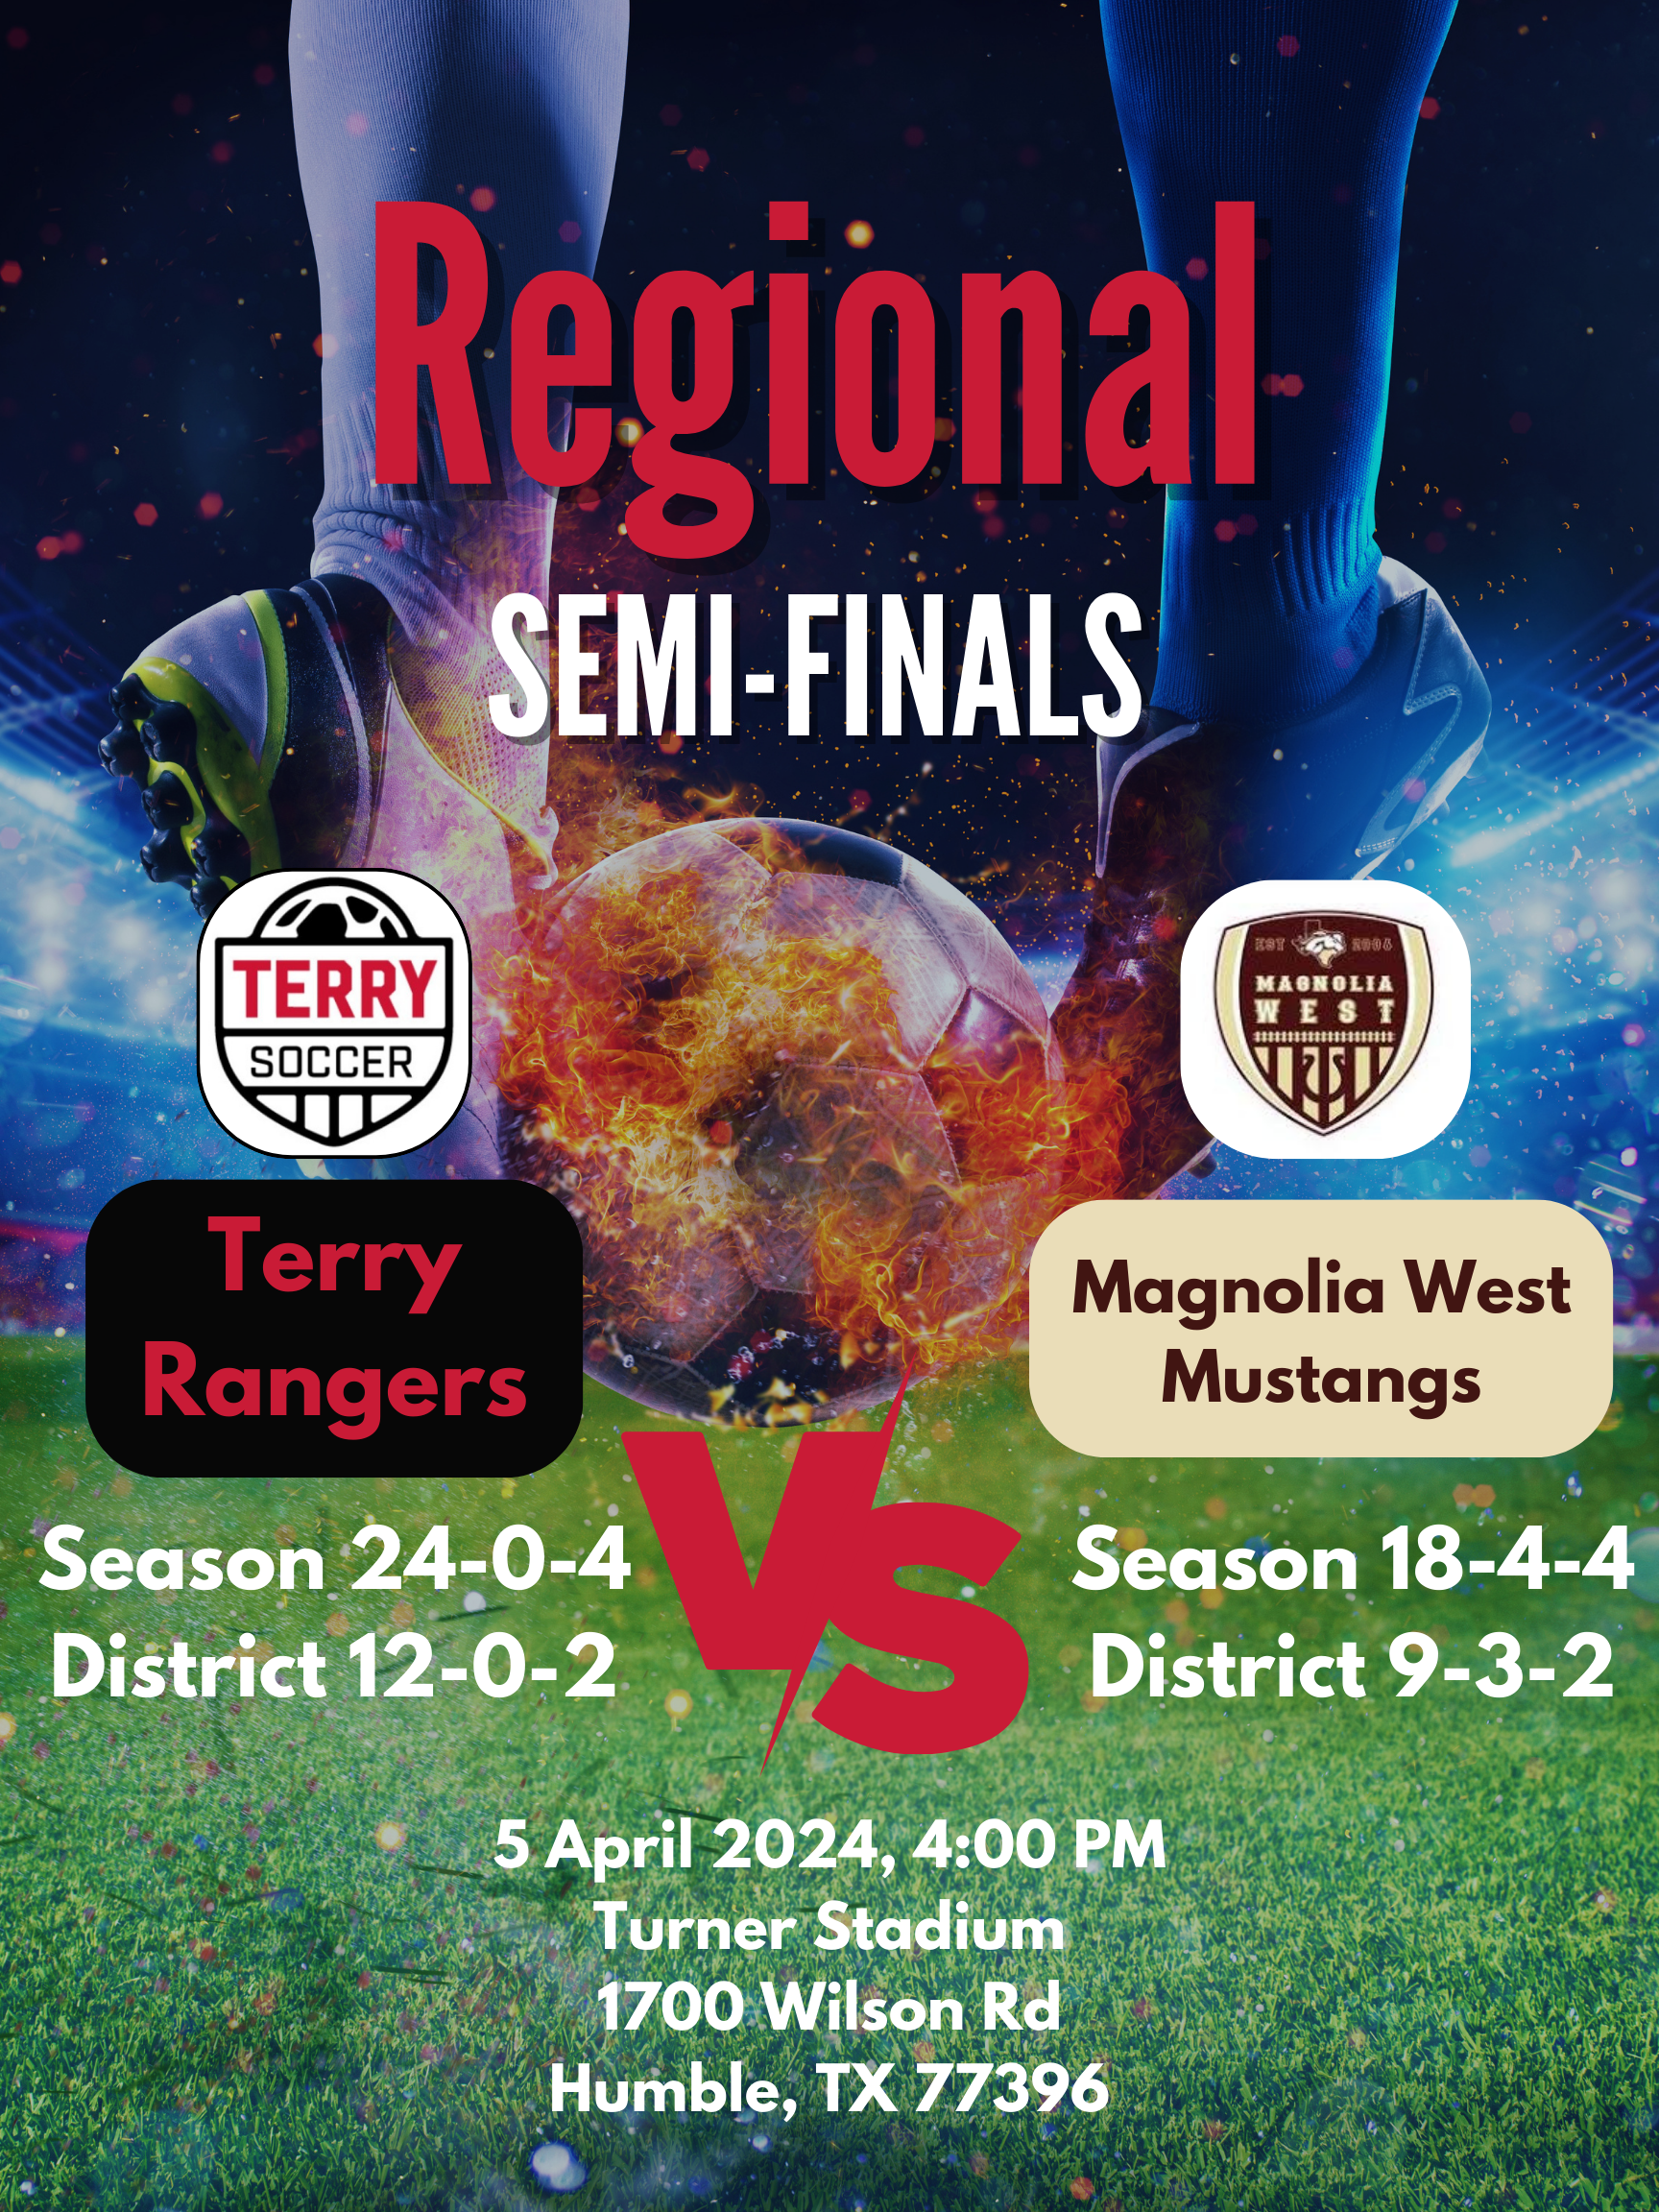 Regional Semi-Finals